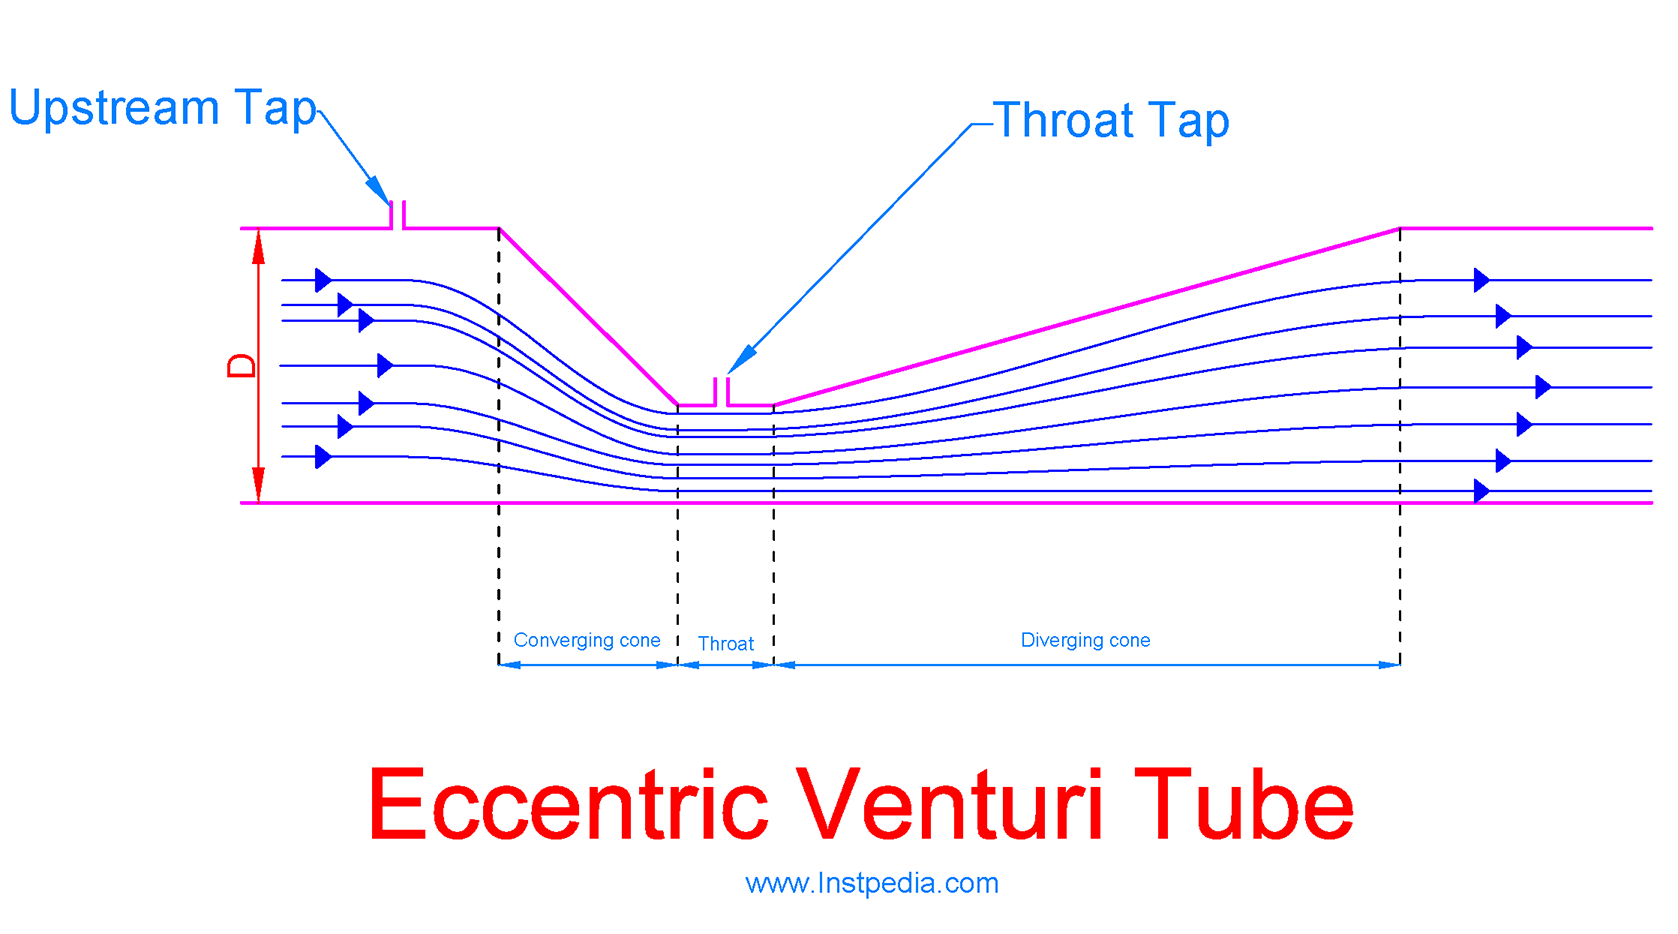 Eccentric Venturi Tube